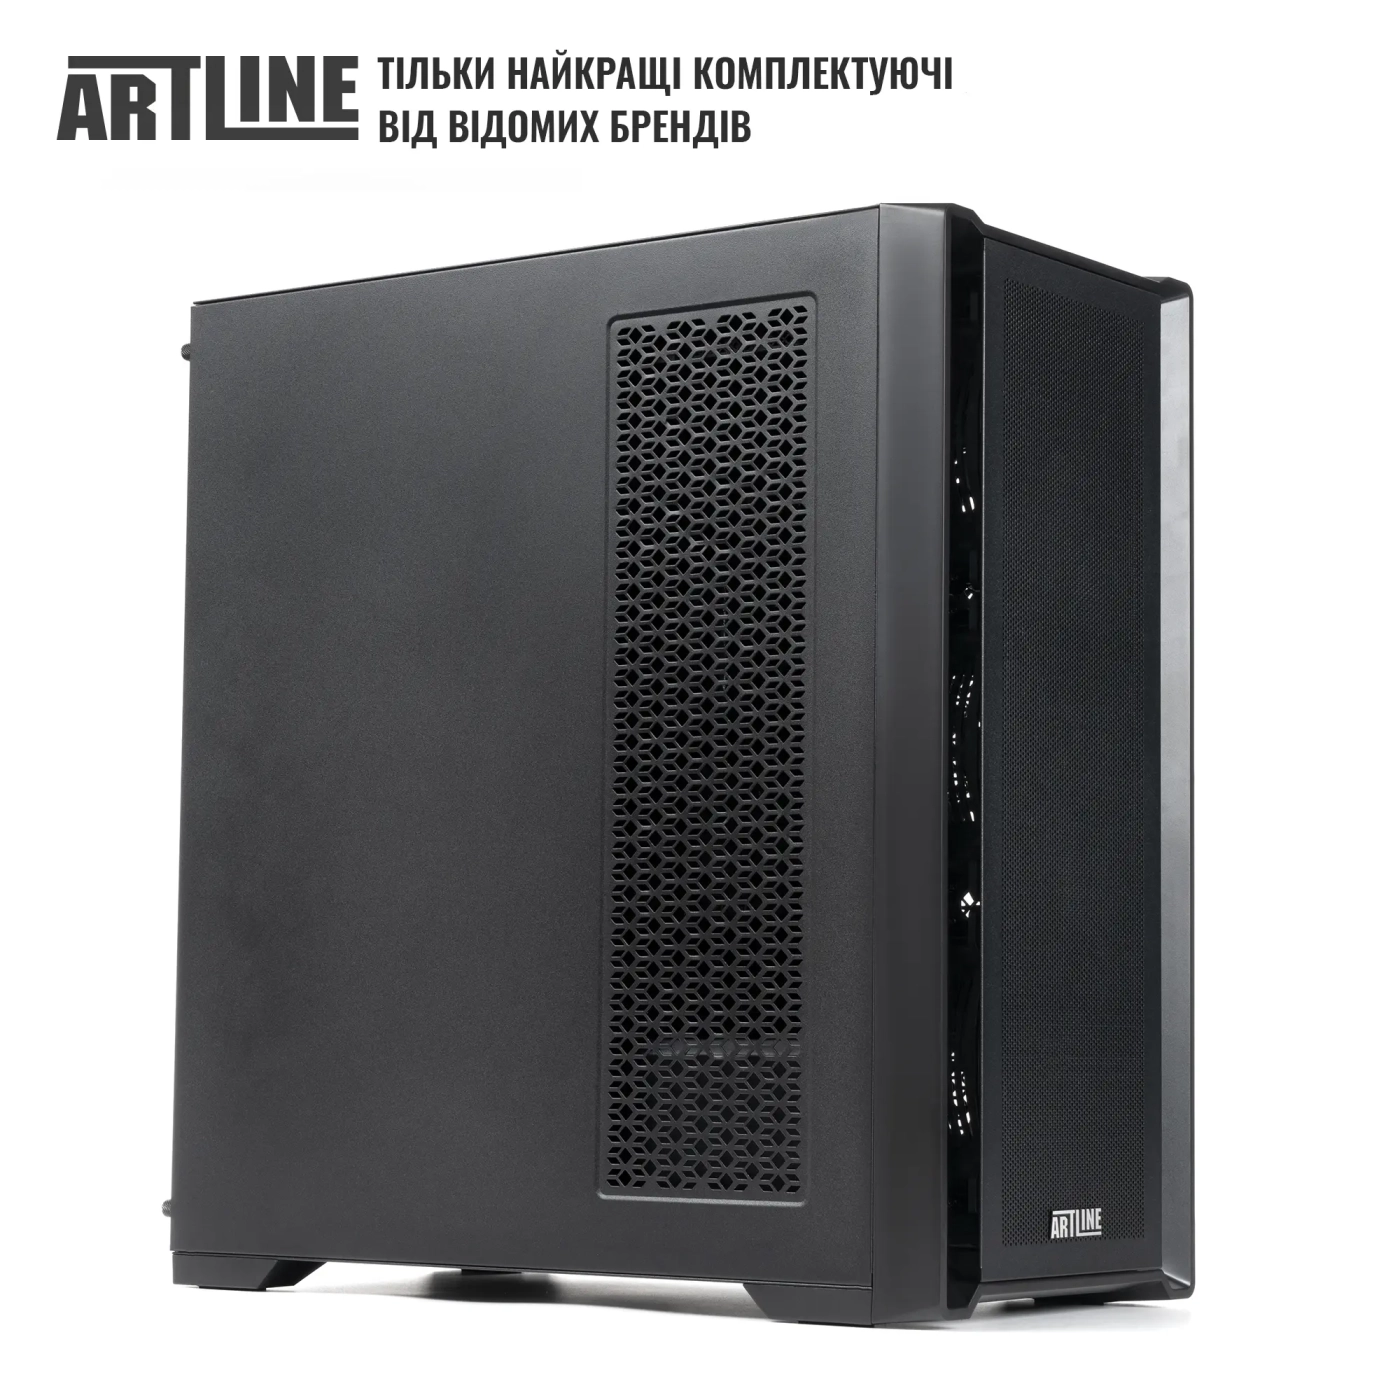 Купить Сервер ARTLINE Business T81 (T81v21) - фото 6